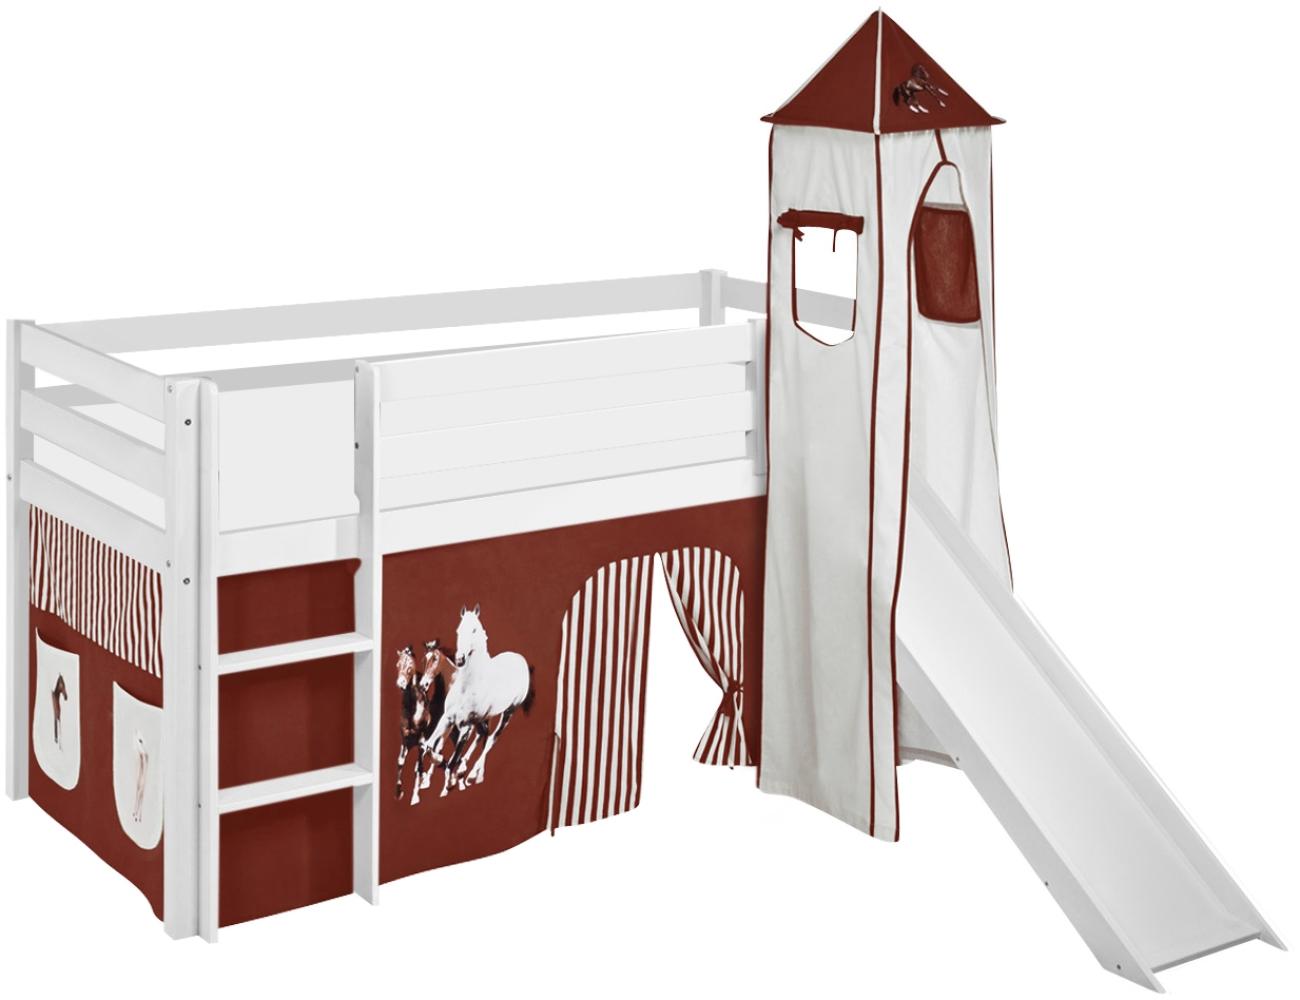 Lilokids 'Jelle' Spielbett 90 x 190 cm, Pferde Braun Beige, Kiefer massiv, mit Turm, Rutsche und Vorhang Bild 1